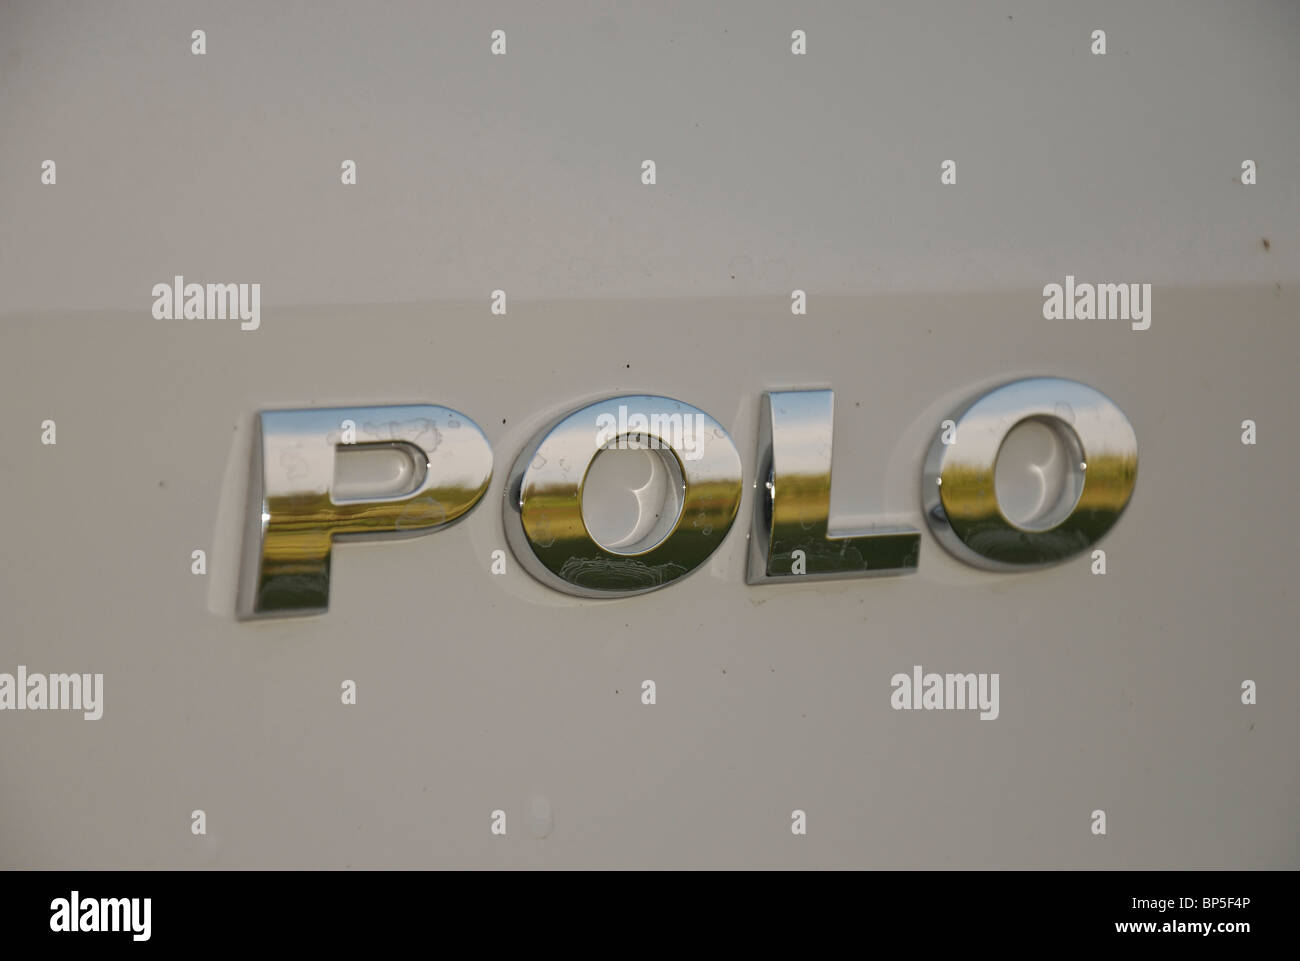 Polo badge, logo, emblem (Volkswagen Polo subcompact car Stock Photo - Alamy